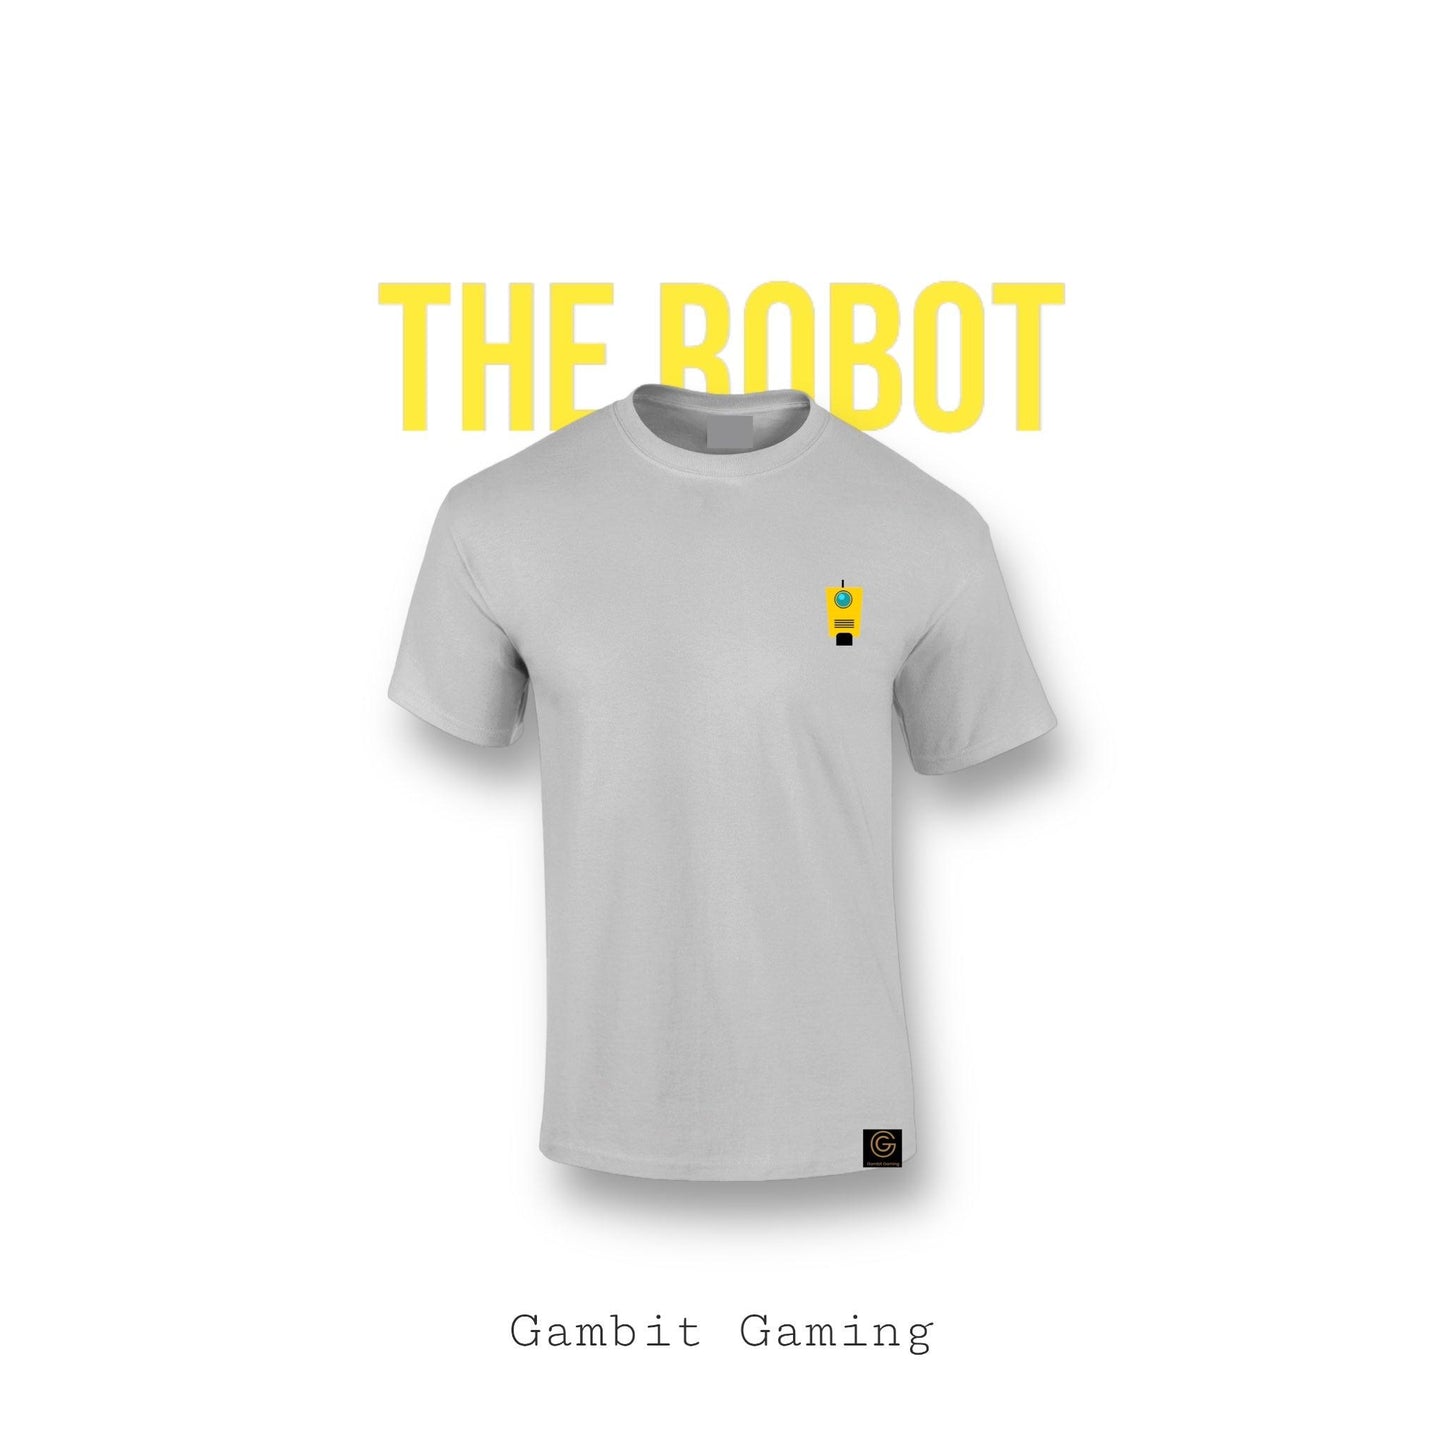 The Robot - Gambit Gaming